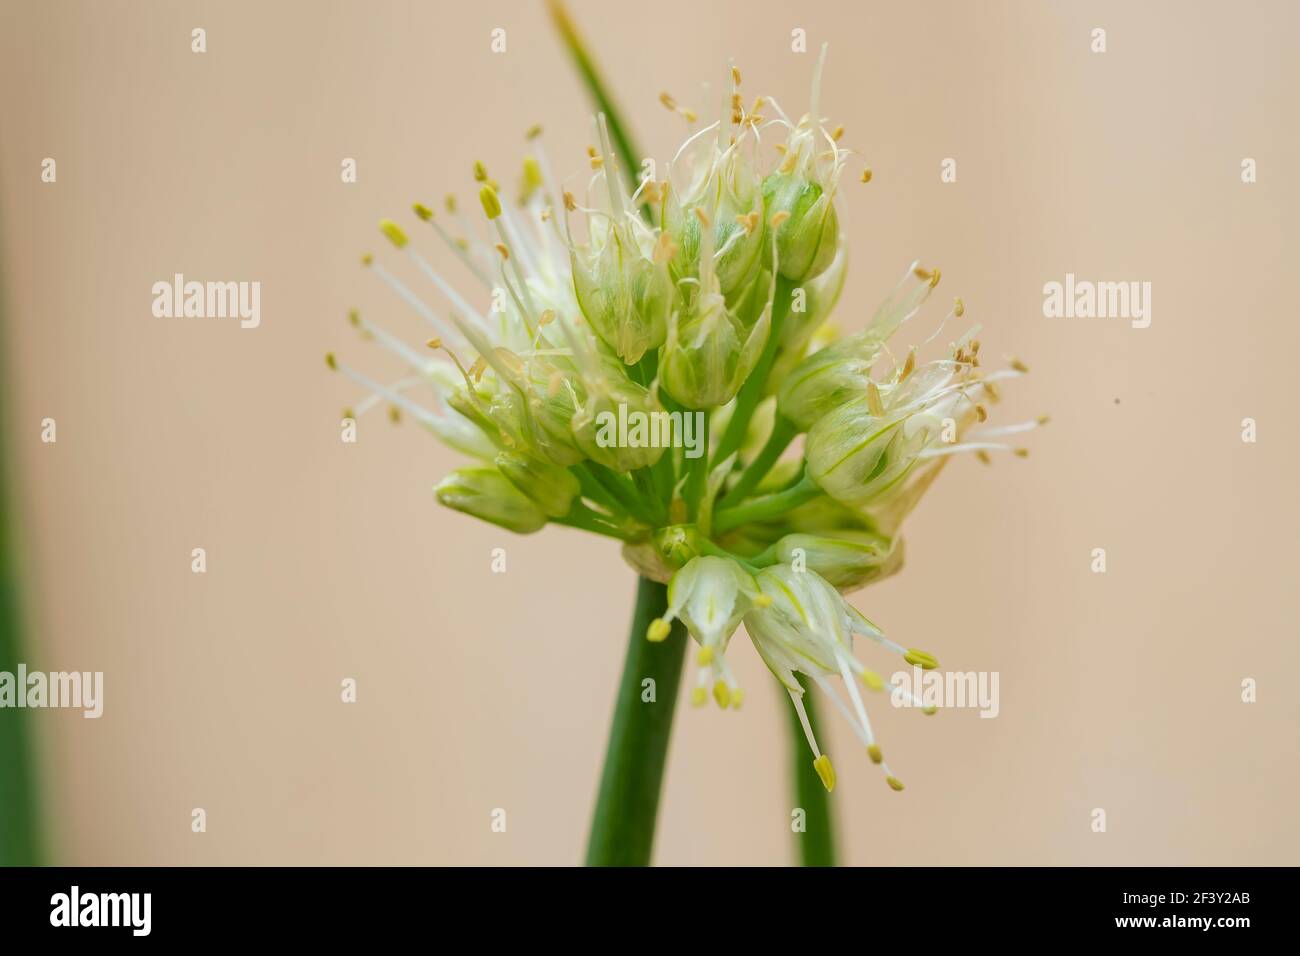 Weiße blühende Zwiebel - Allium obliquum (Alliaceae) Stockfoto